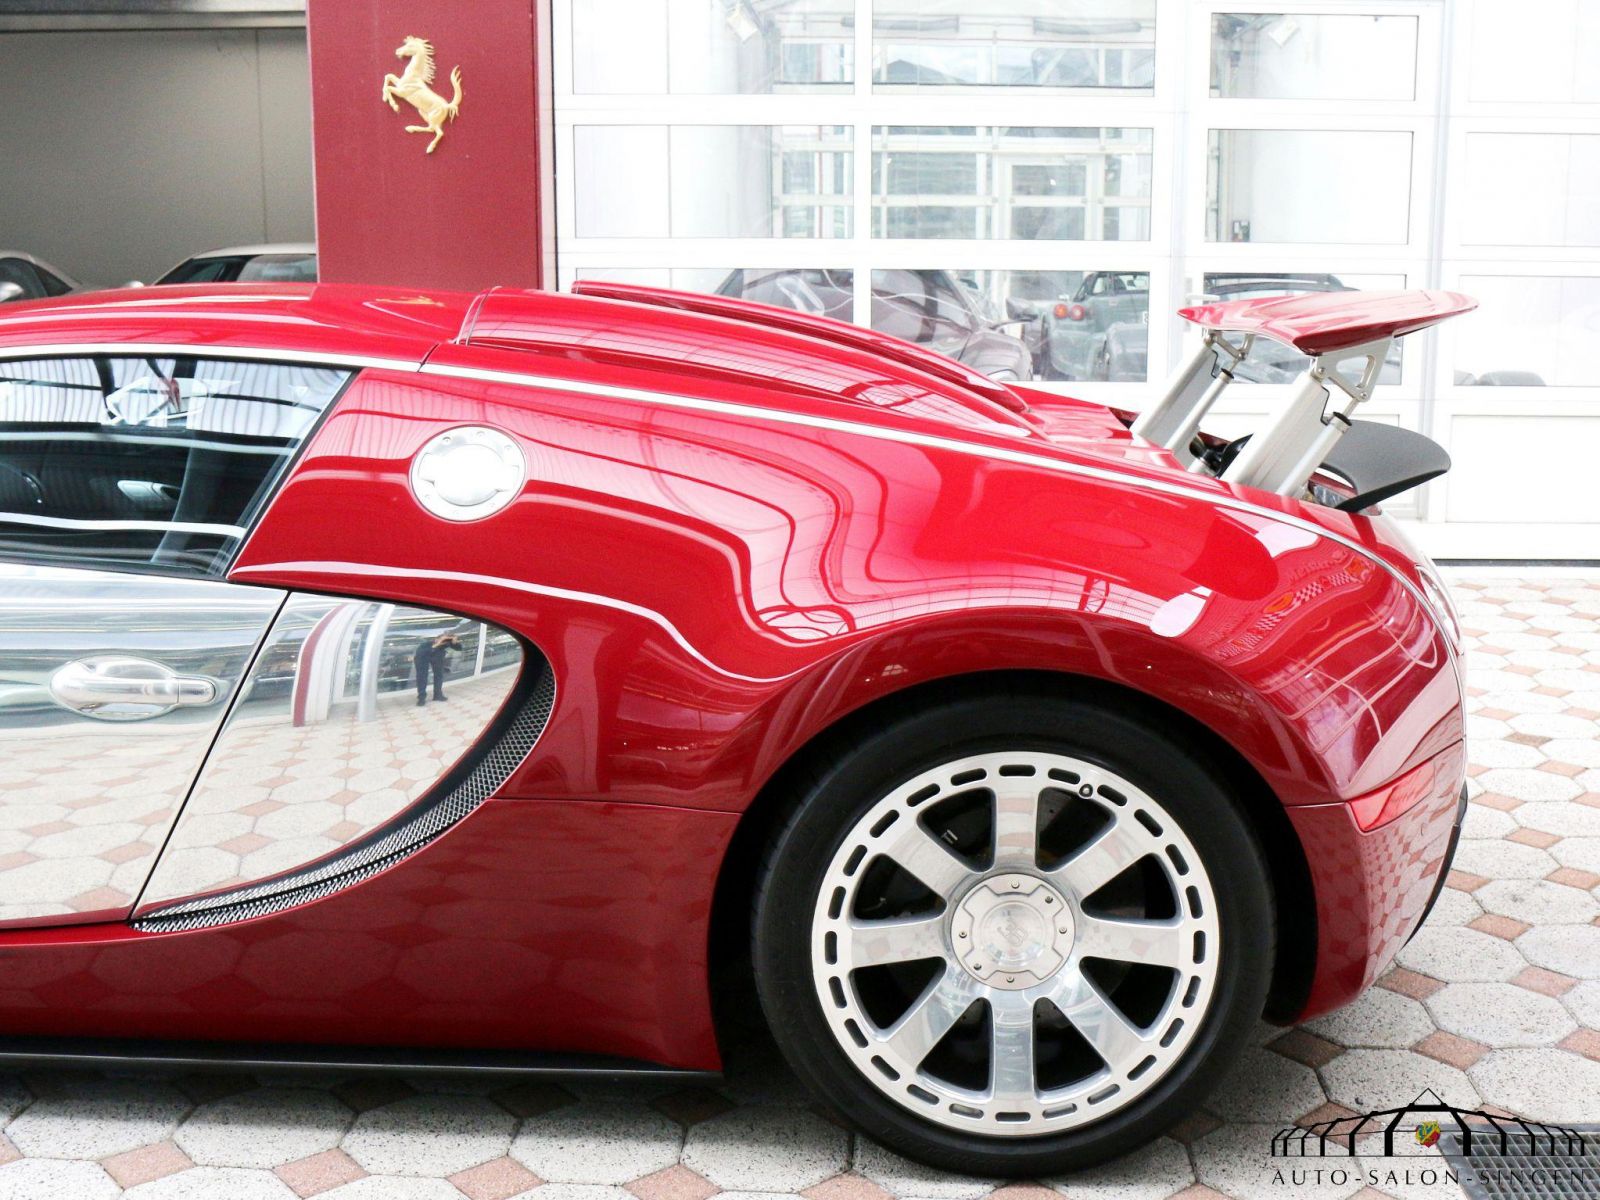 Bugatti - Auto Salon Singen